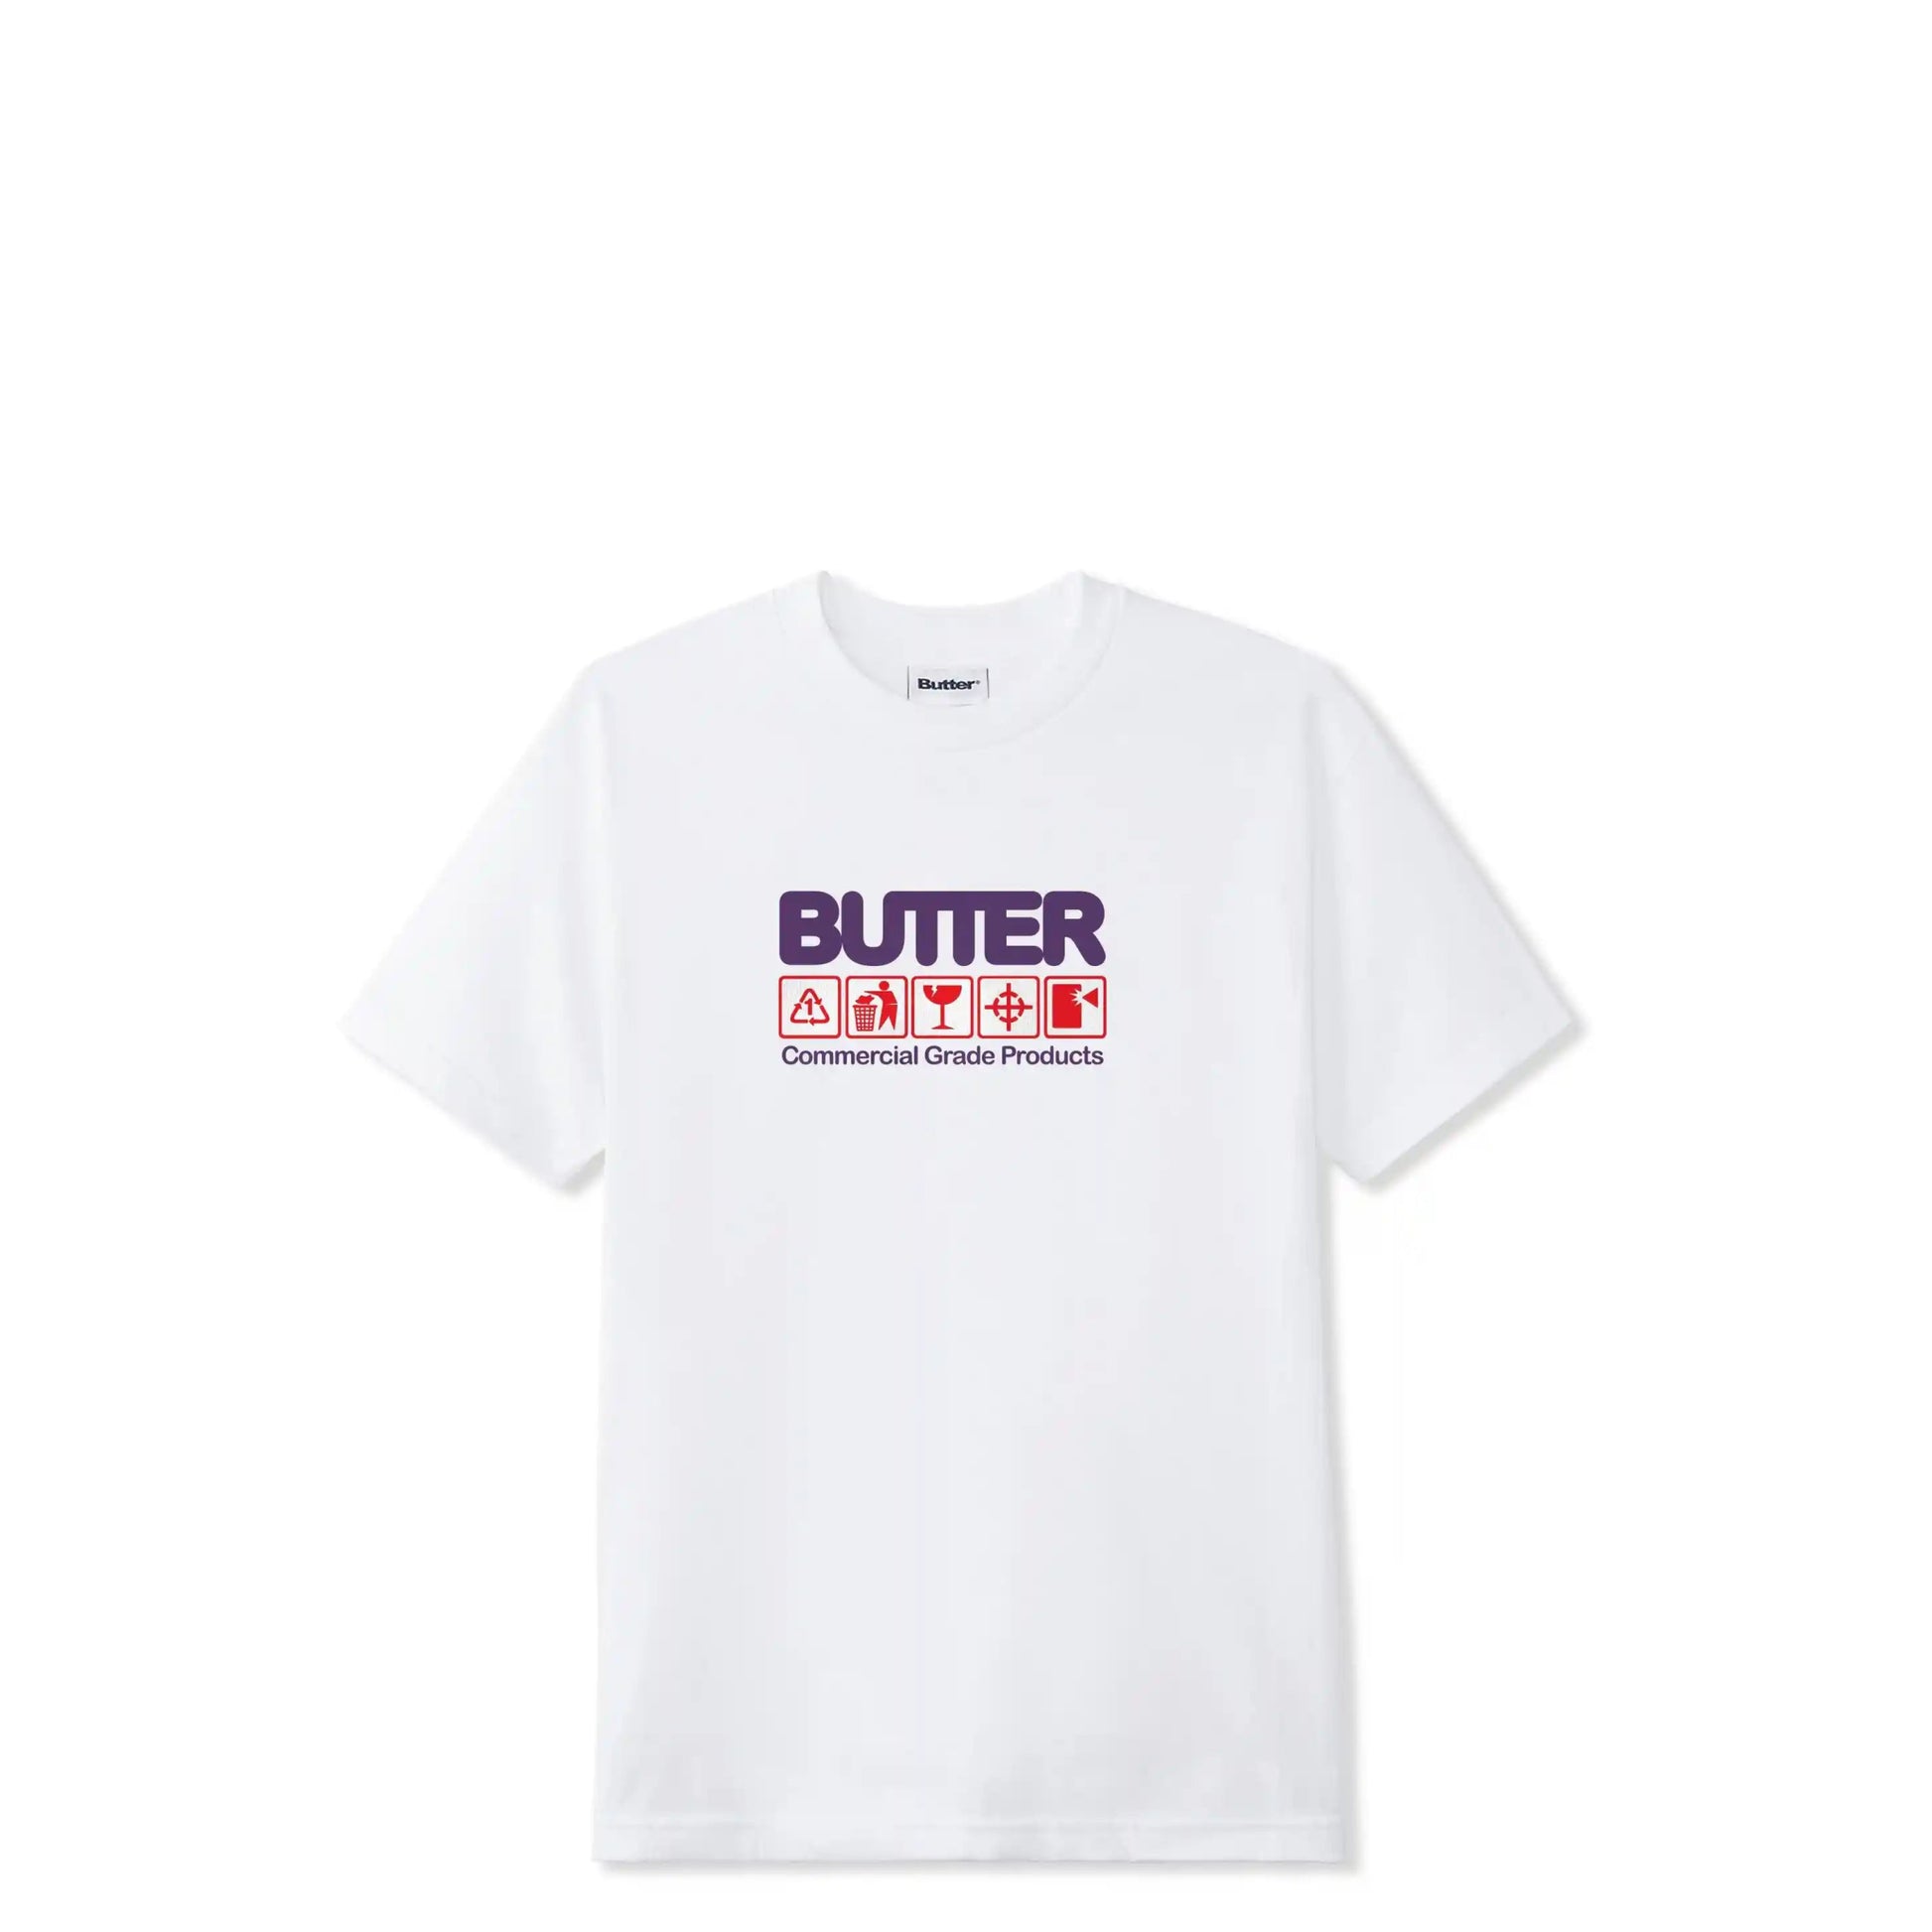 Butter Goods Symbols Tee, white - Tiki Room Skateboards - 1